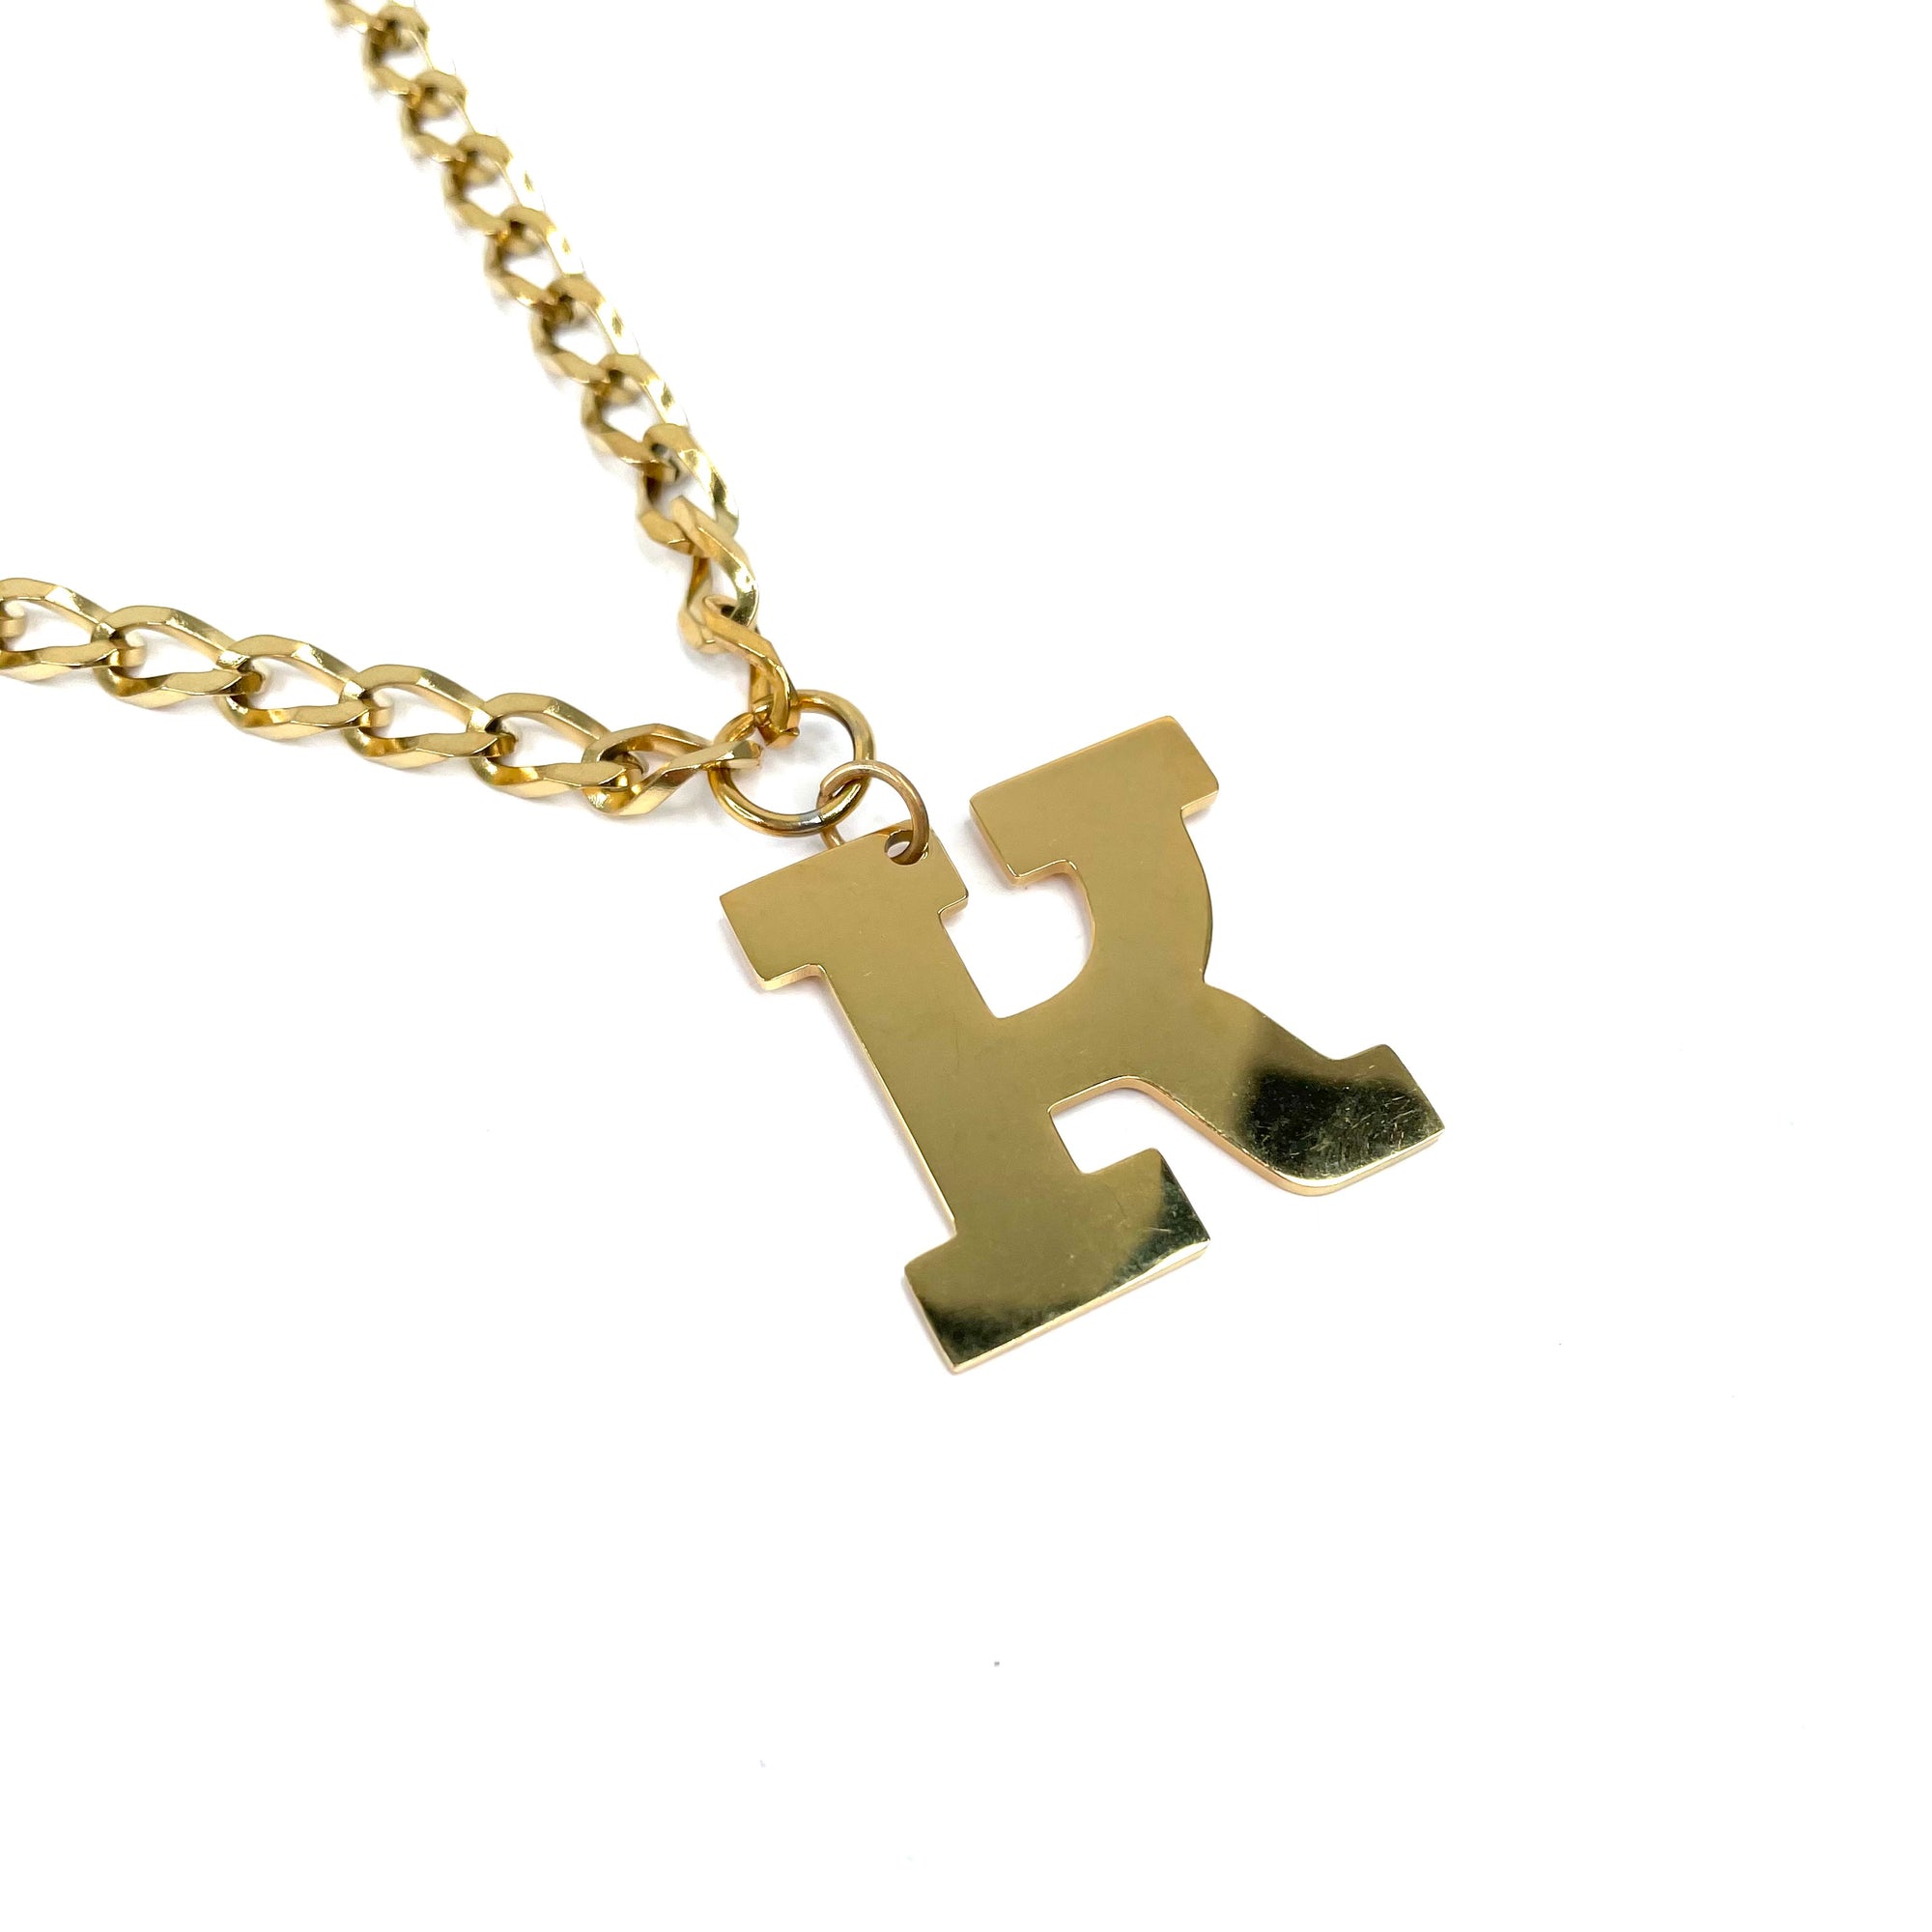 Lettering Legend Necklace Necklaces Cerese D, Inc. Gold K 